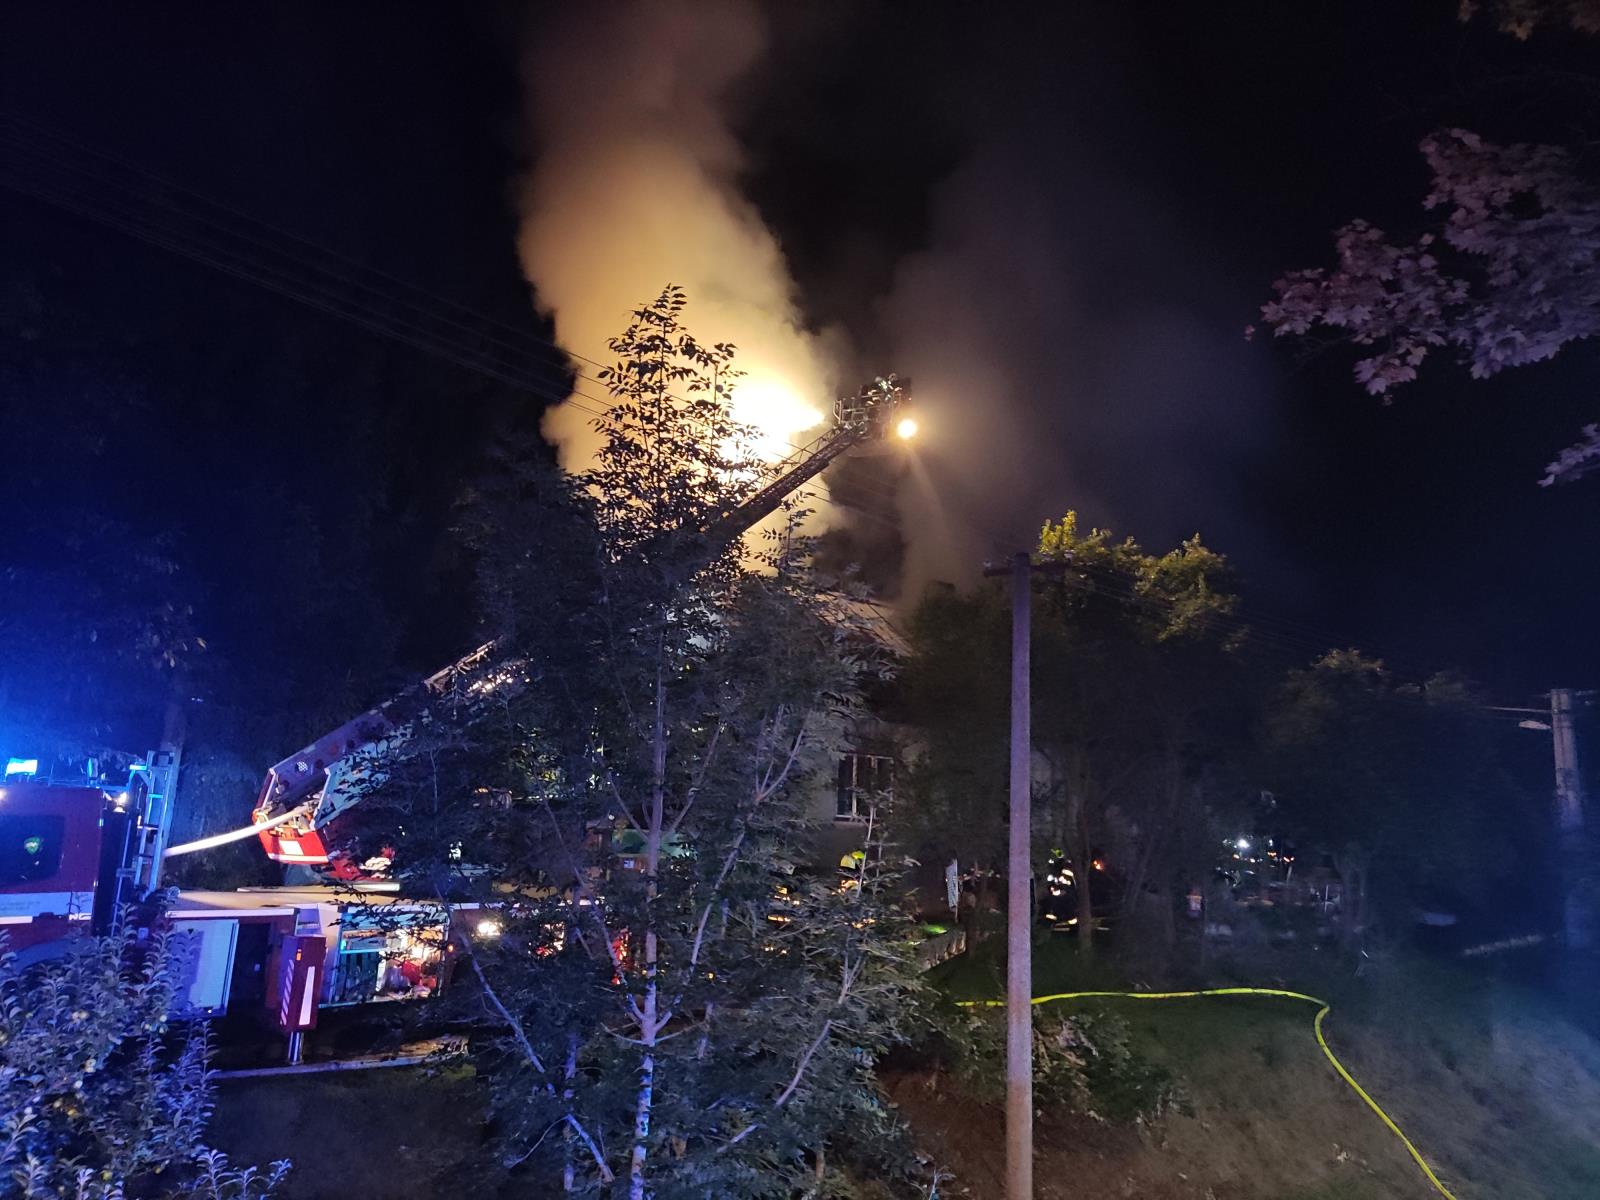 LIK_hasiči likvidují požár RD v Bozkově_pohled na hořící objekt a hasiče zasahující z plošiny.jpg